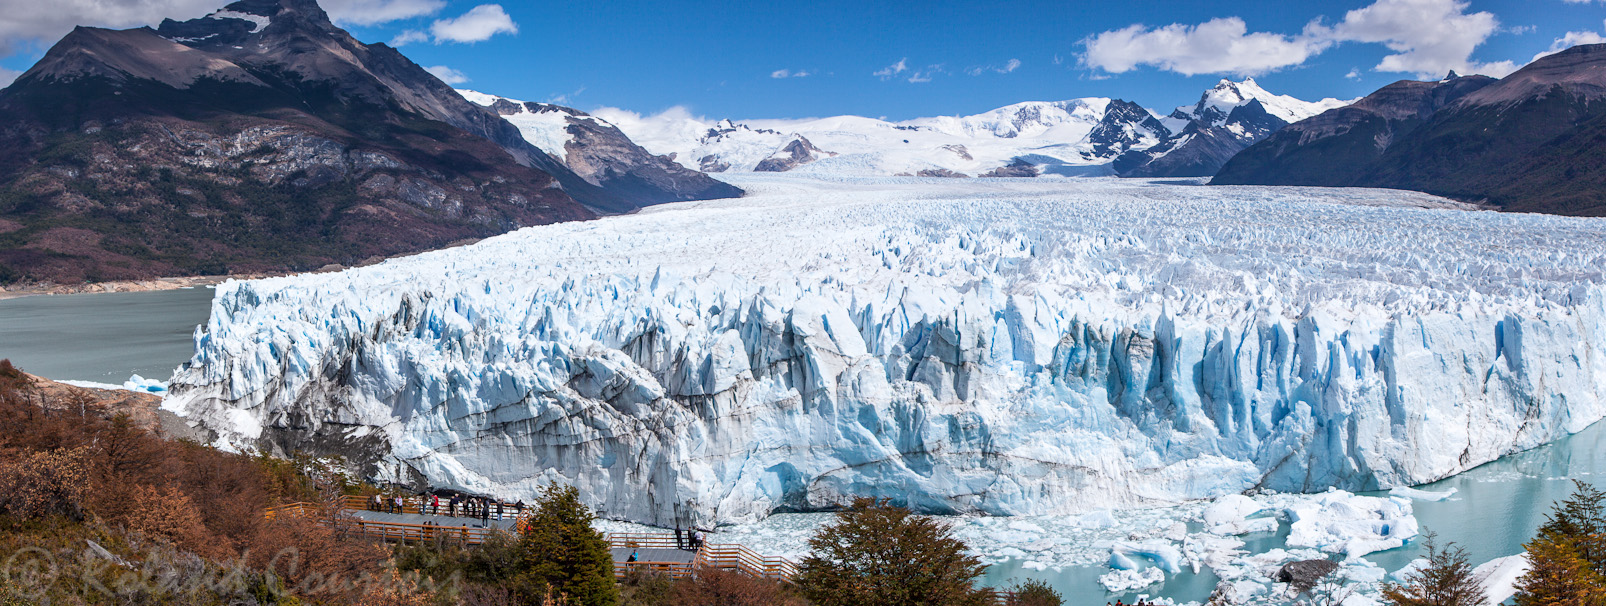 Glacier Perito Moreno. En avancant le front du glacier atteint la rive d'en face et sépare le lac en deux parties.